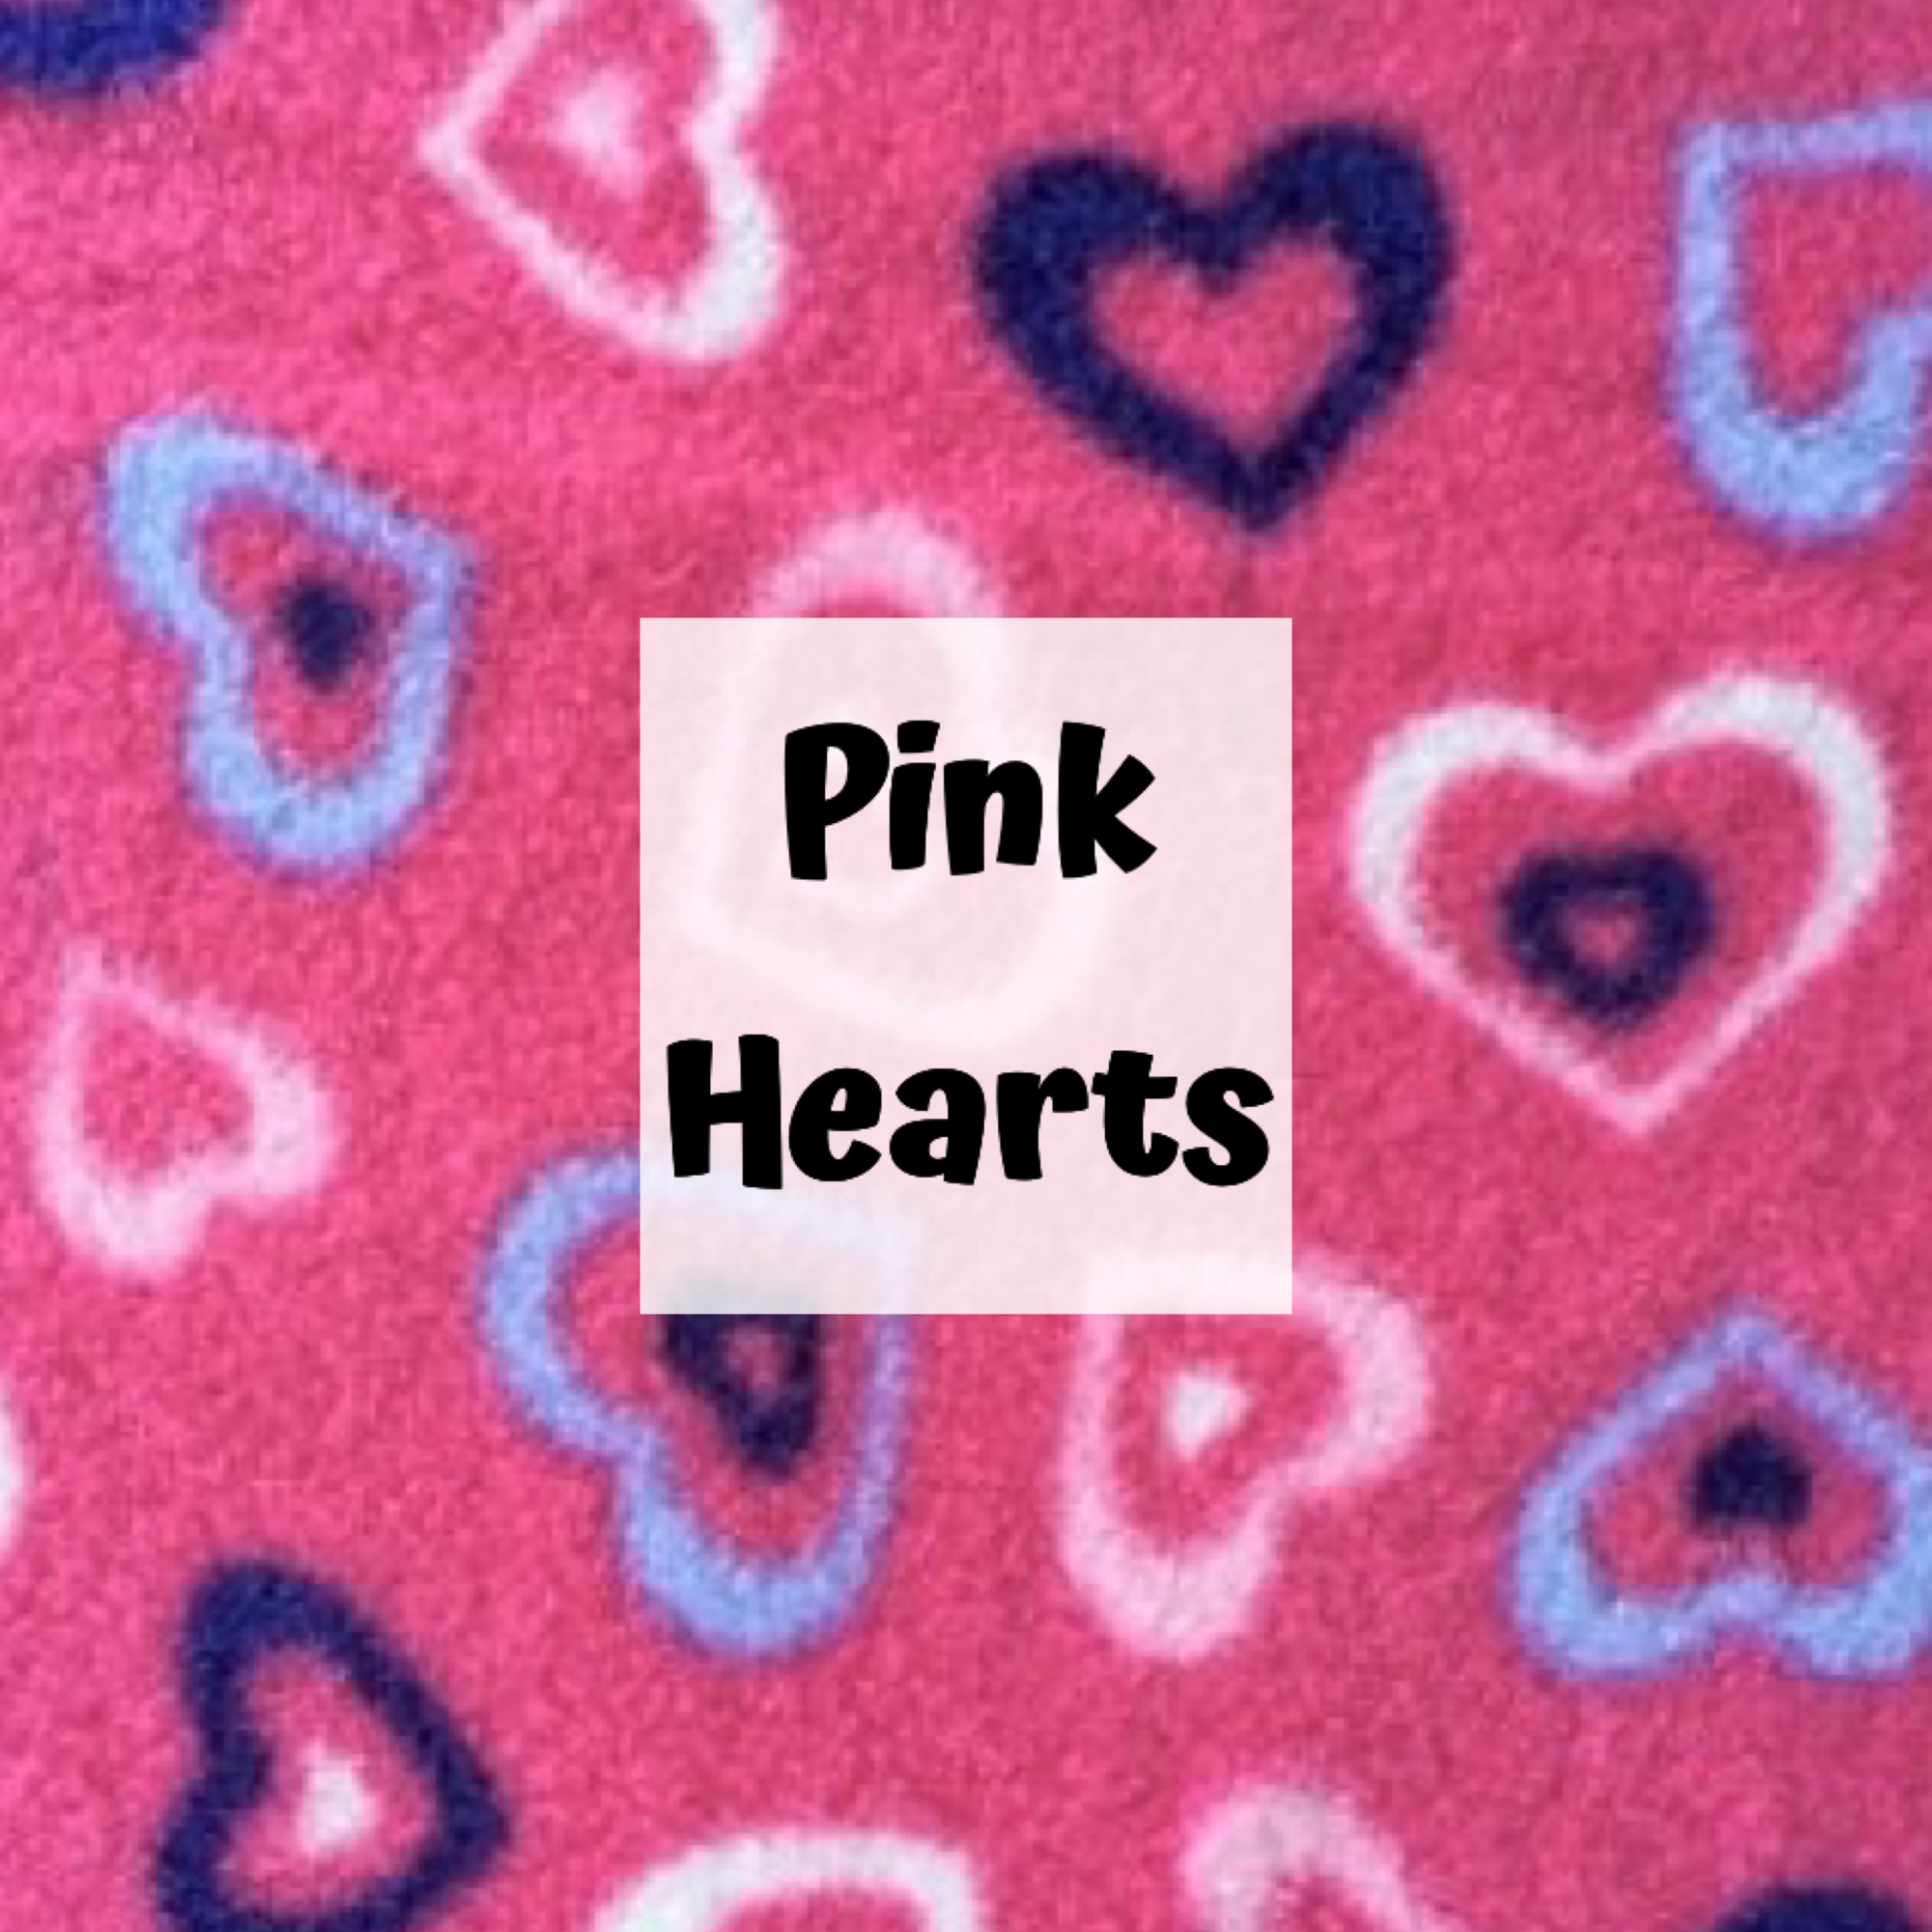 pink hearts fleece